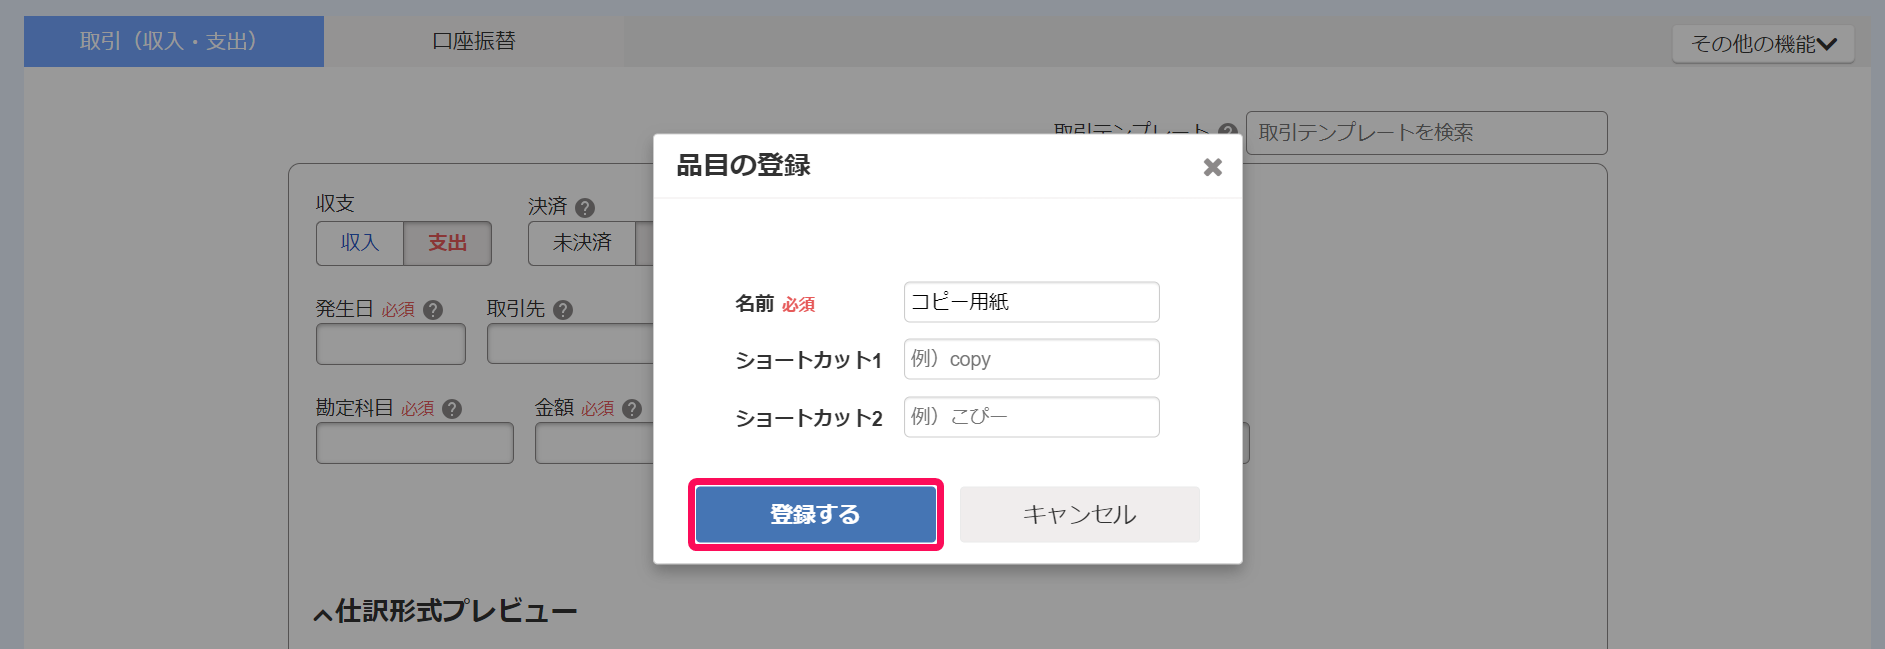 品目の登録画面で登録するボタンを指し示しているスクリーンショット